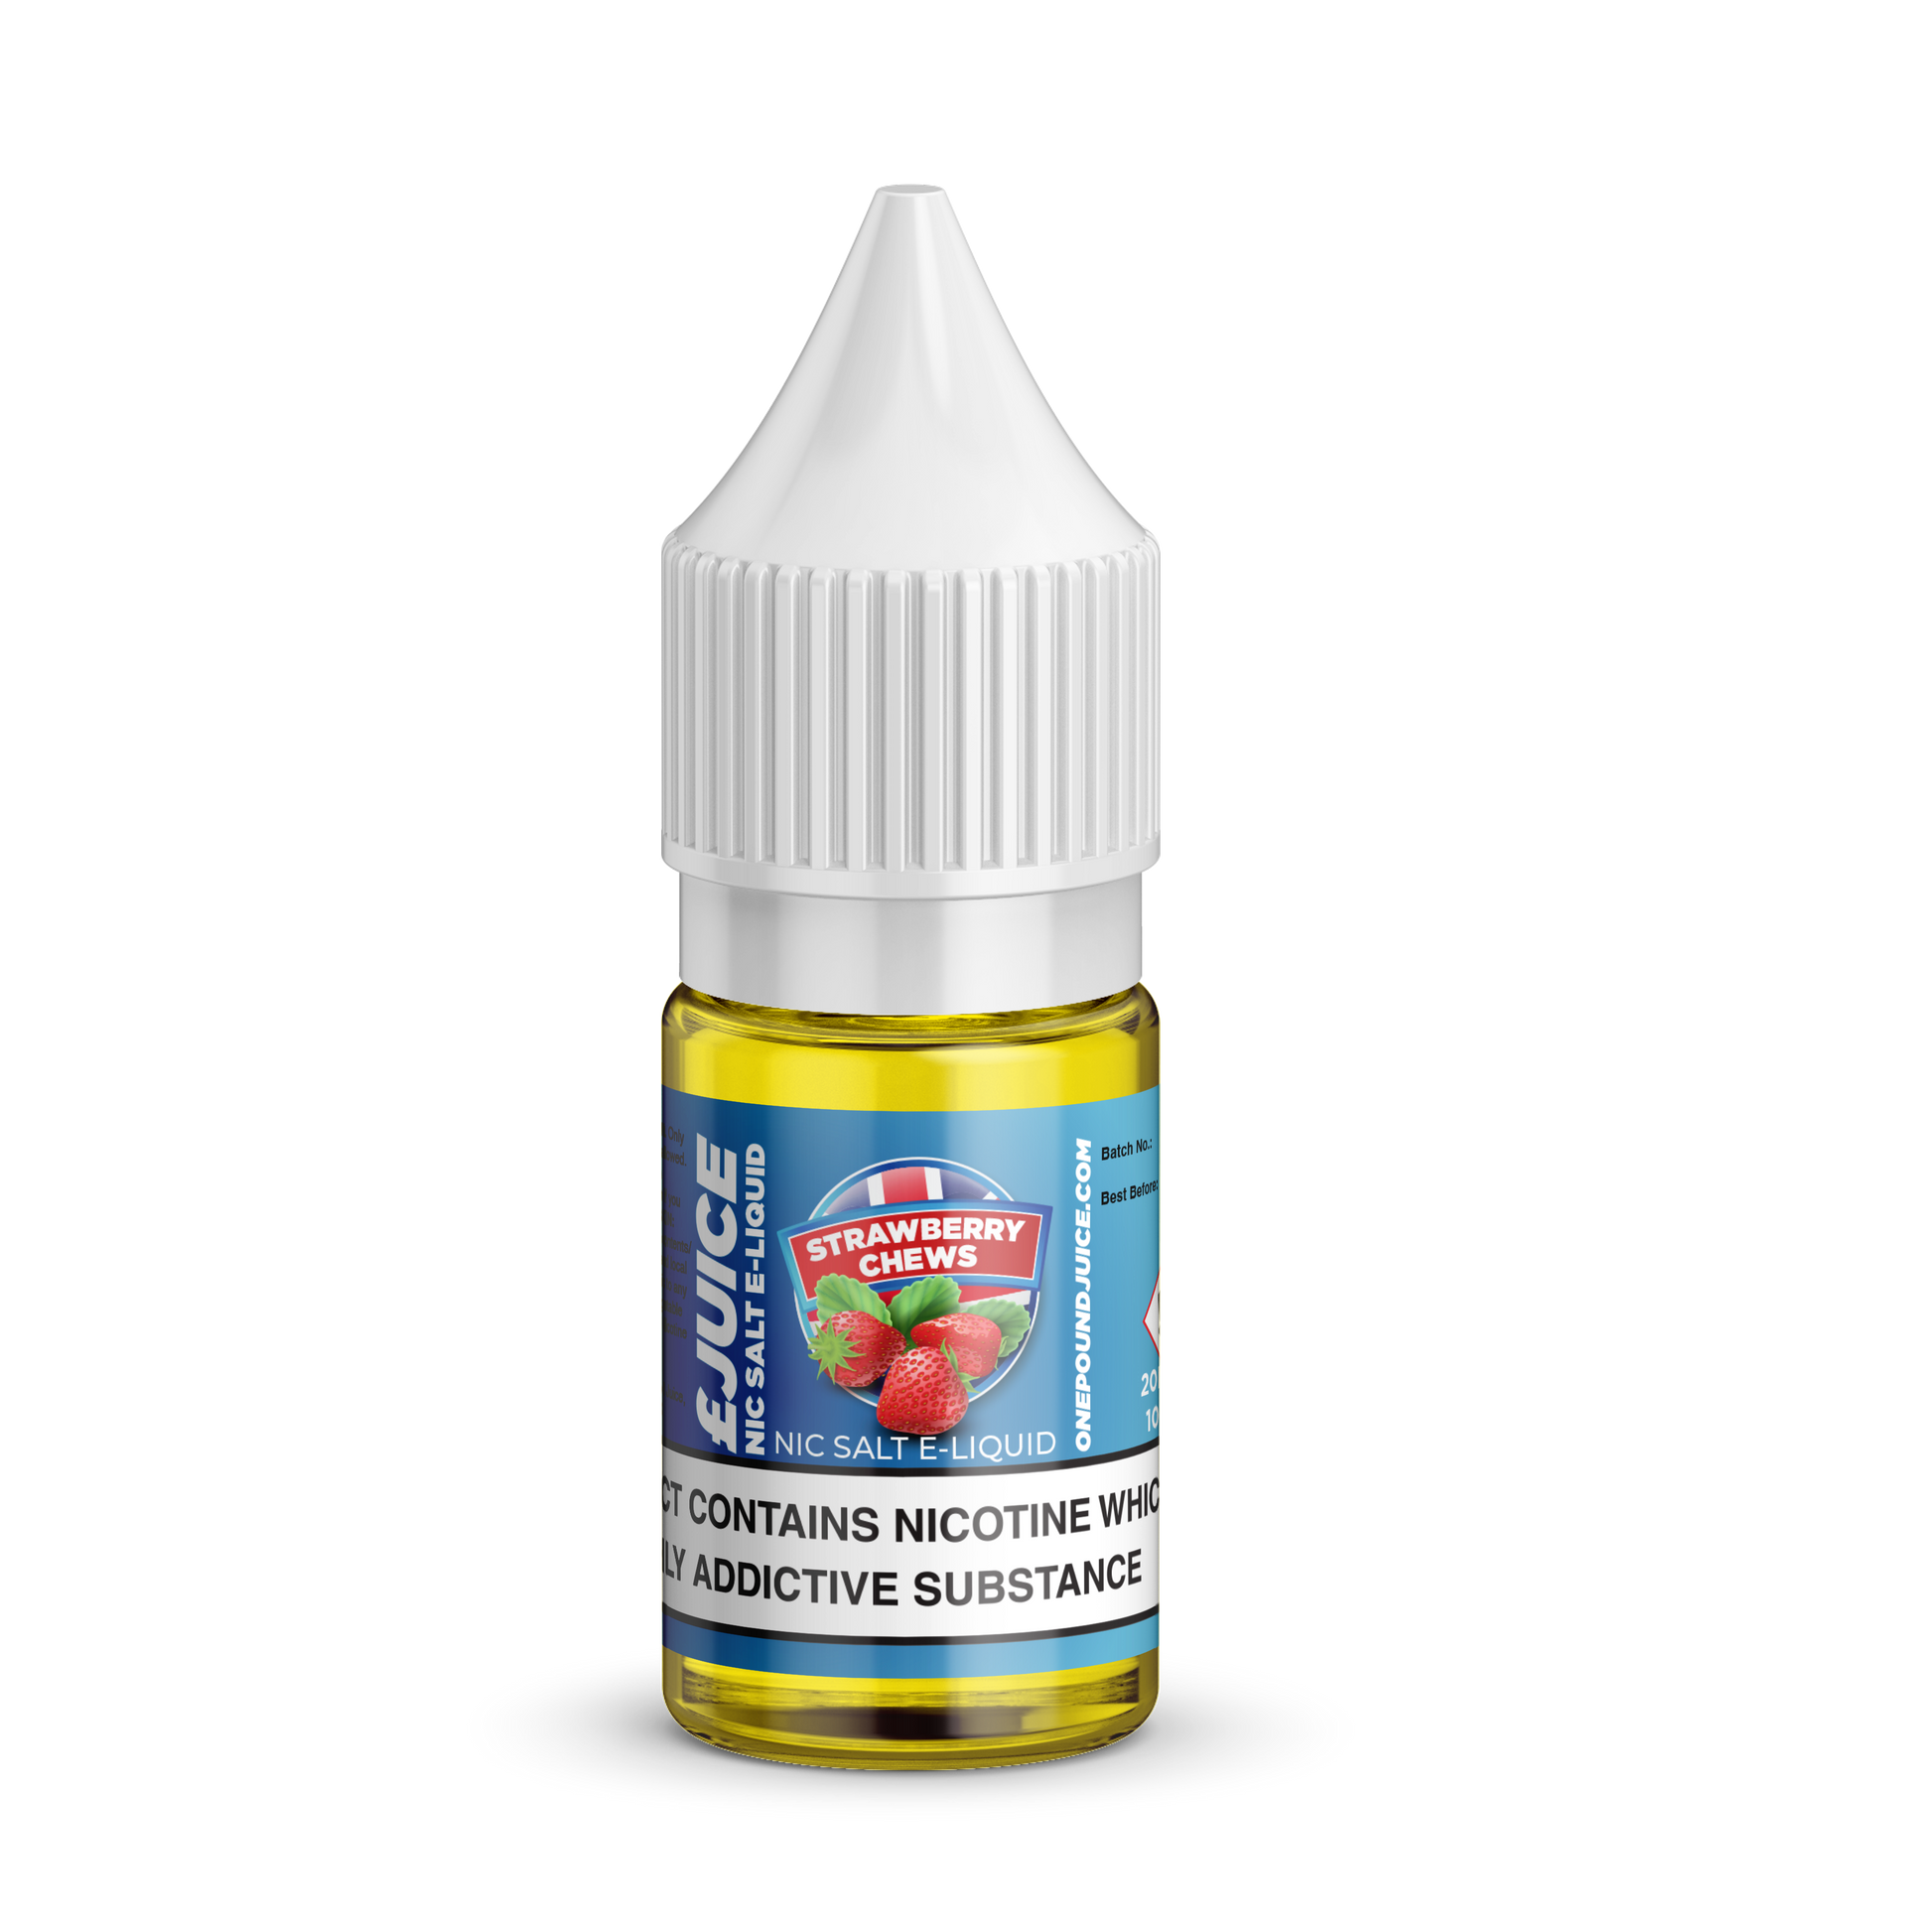 Strawberry Chews Nic Salt E-Liquid by One Pound Juice